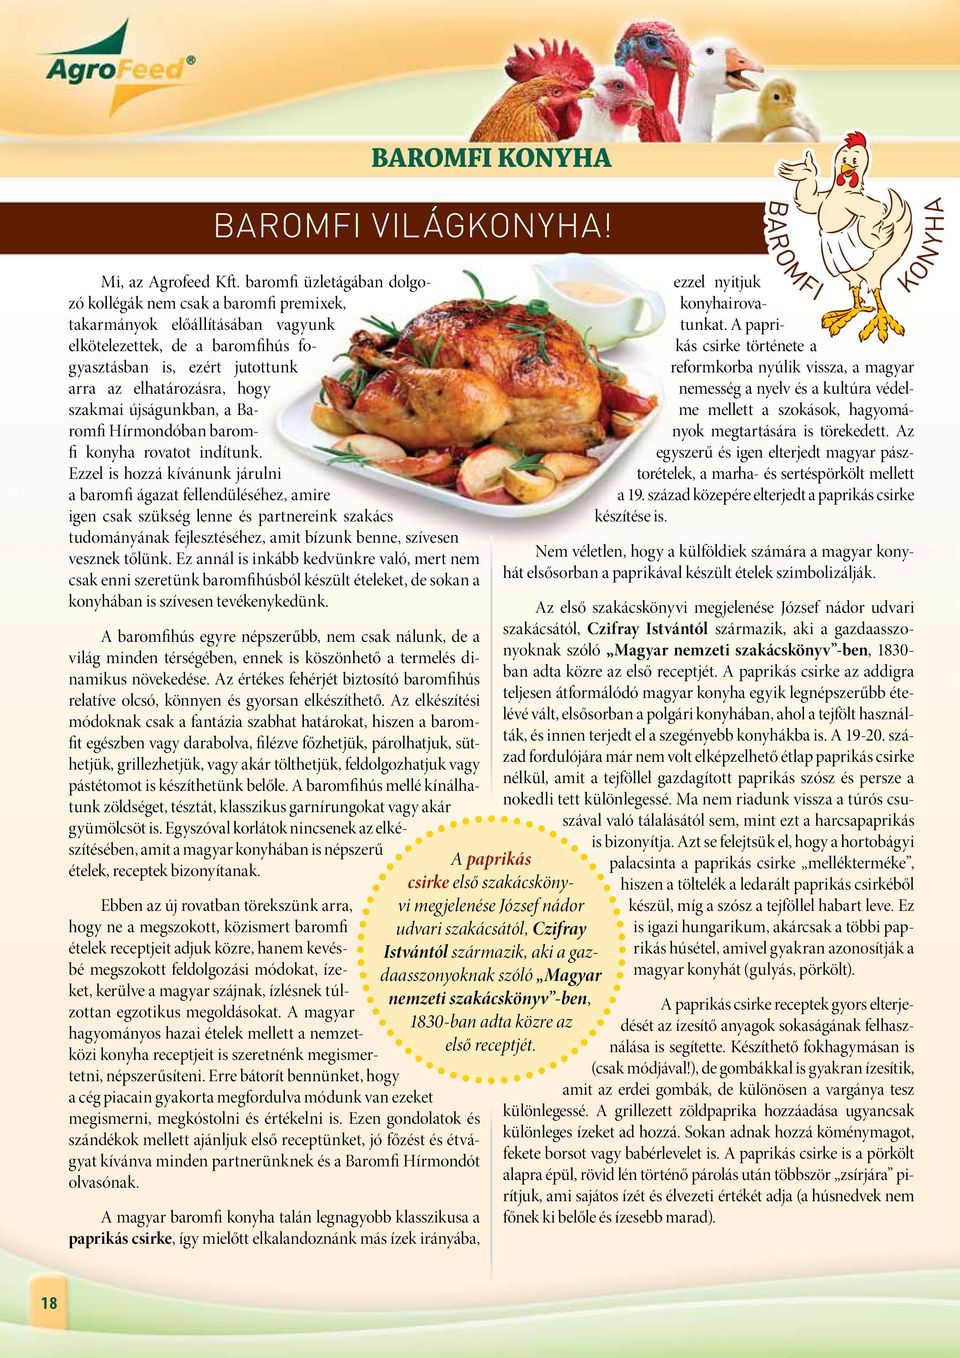 szakmai újságunkban, a Baromfi Hírmondóban baromfi konyha rovatot indítunk.